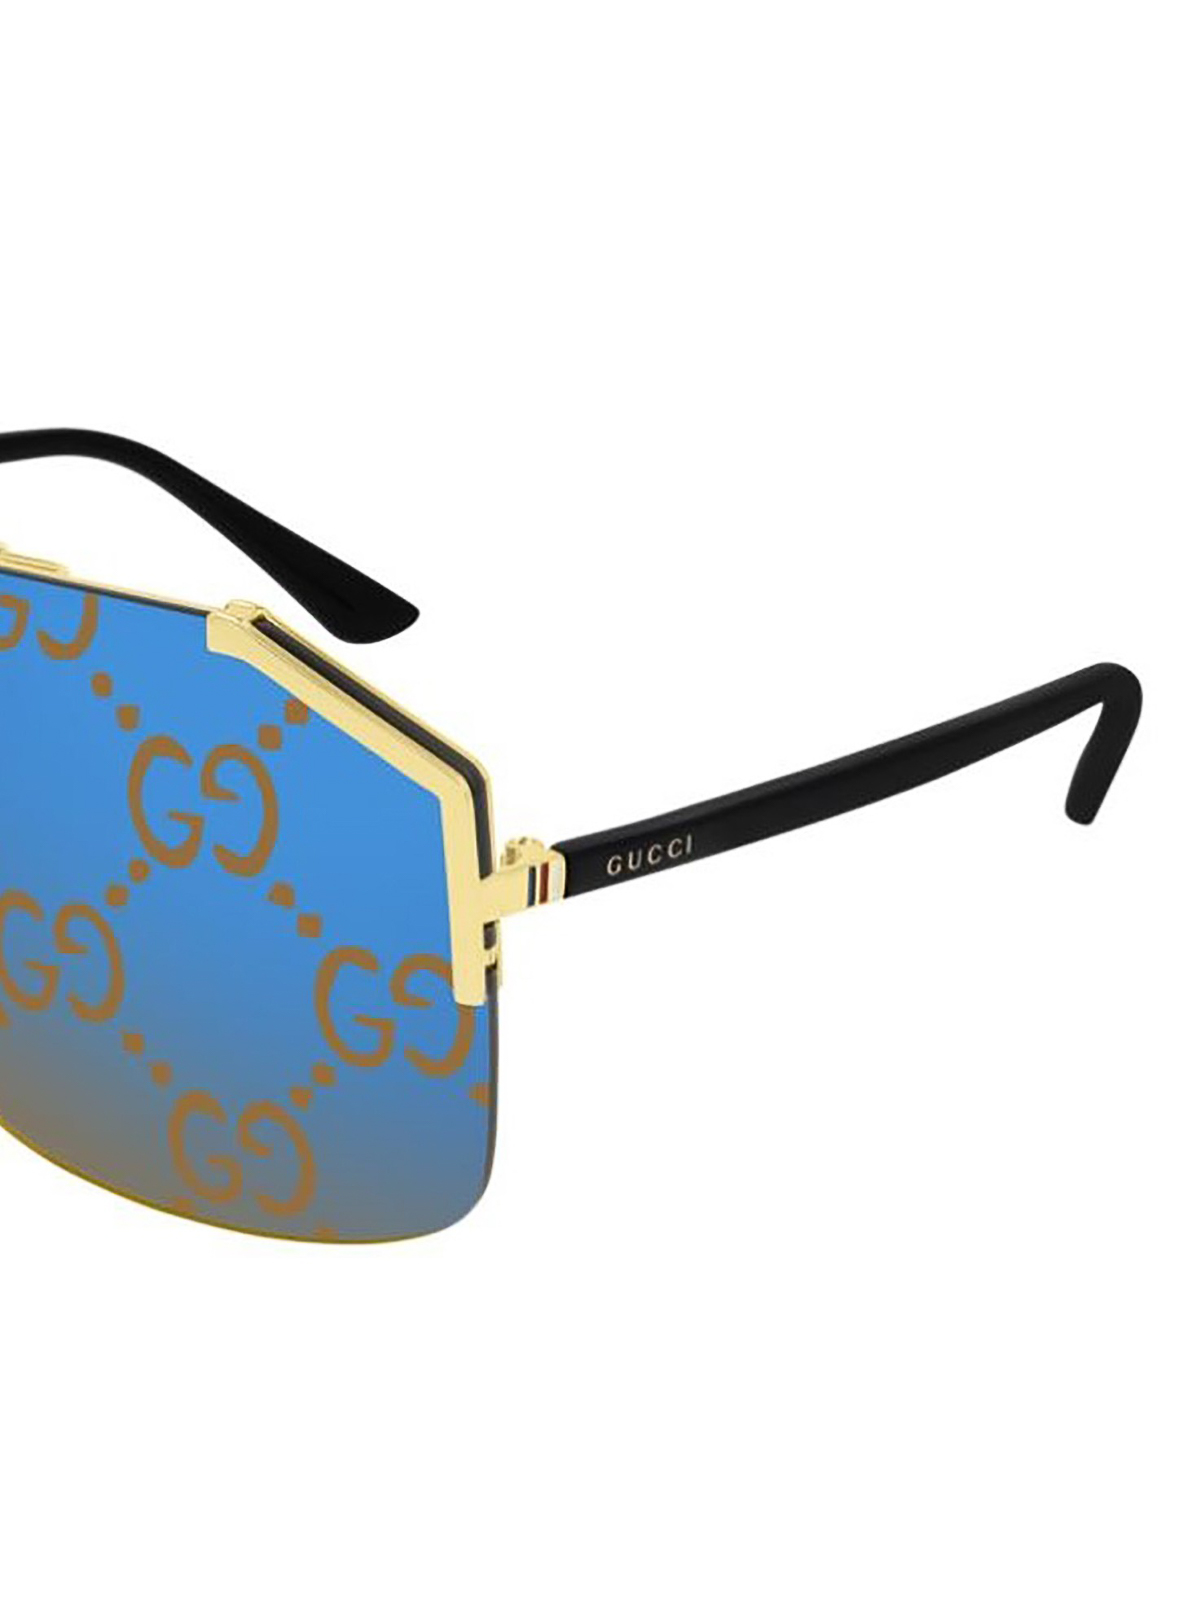 gucci printed sunglasses